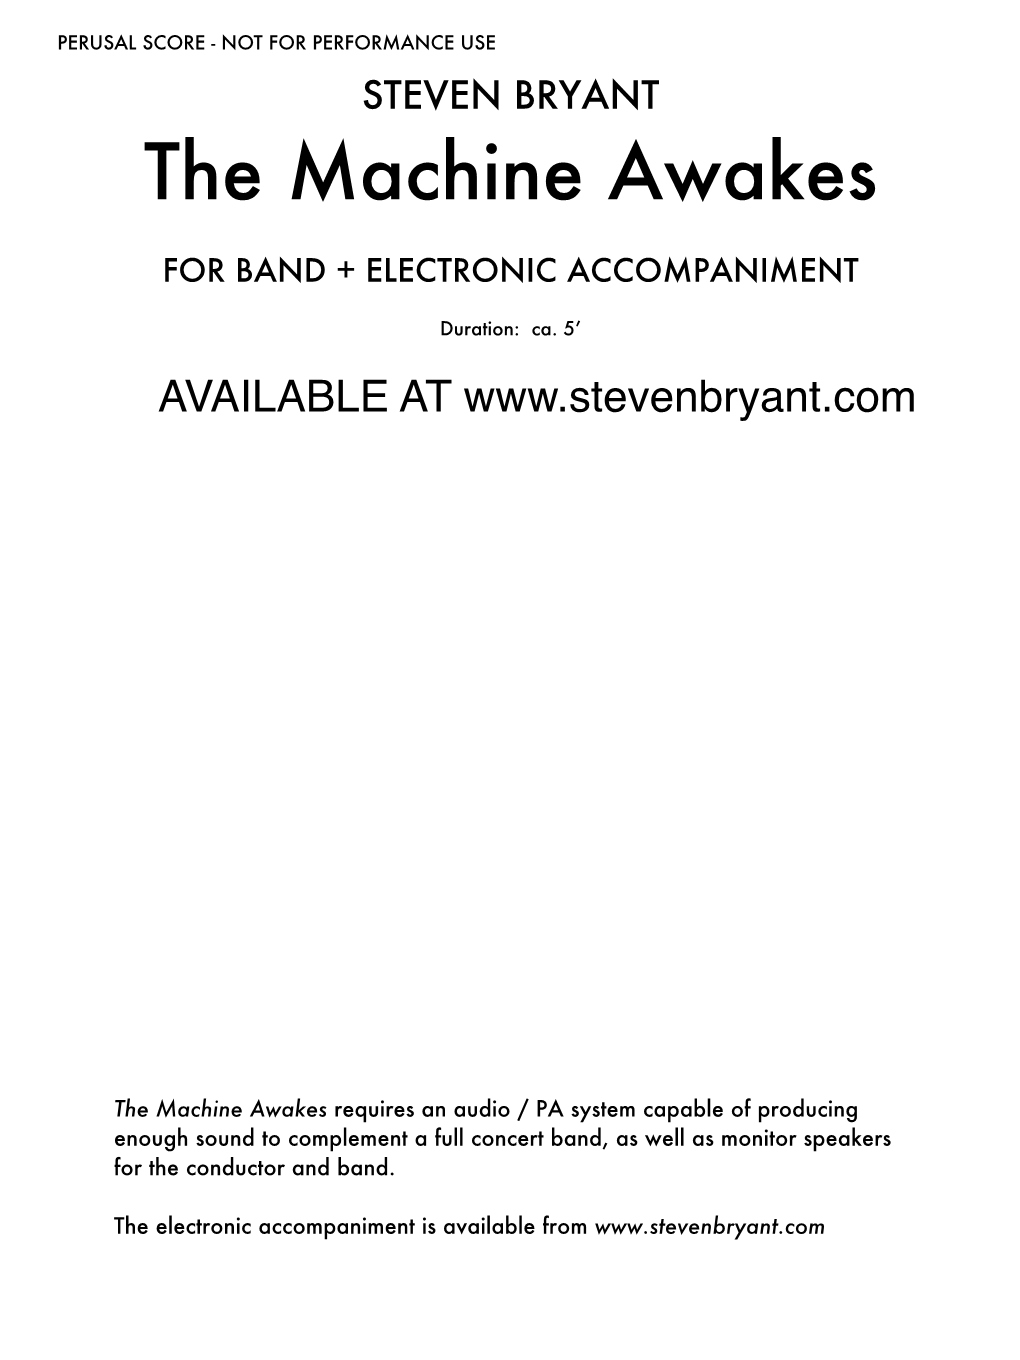 The Machine Awakes